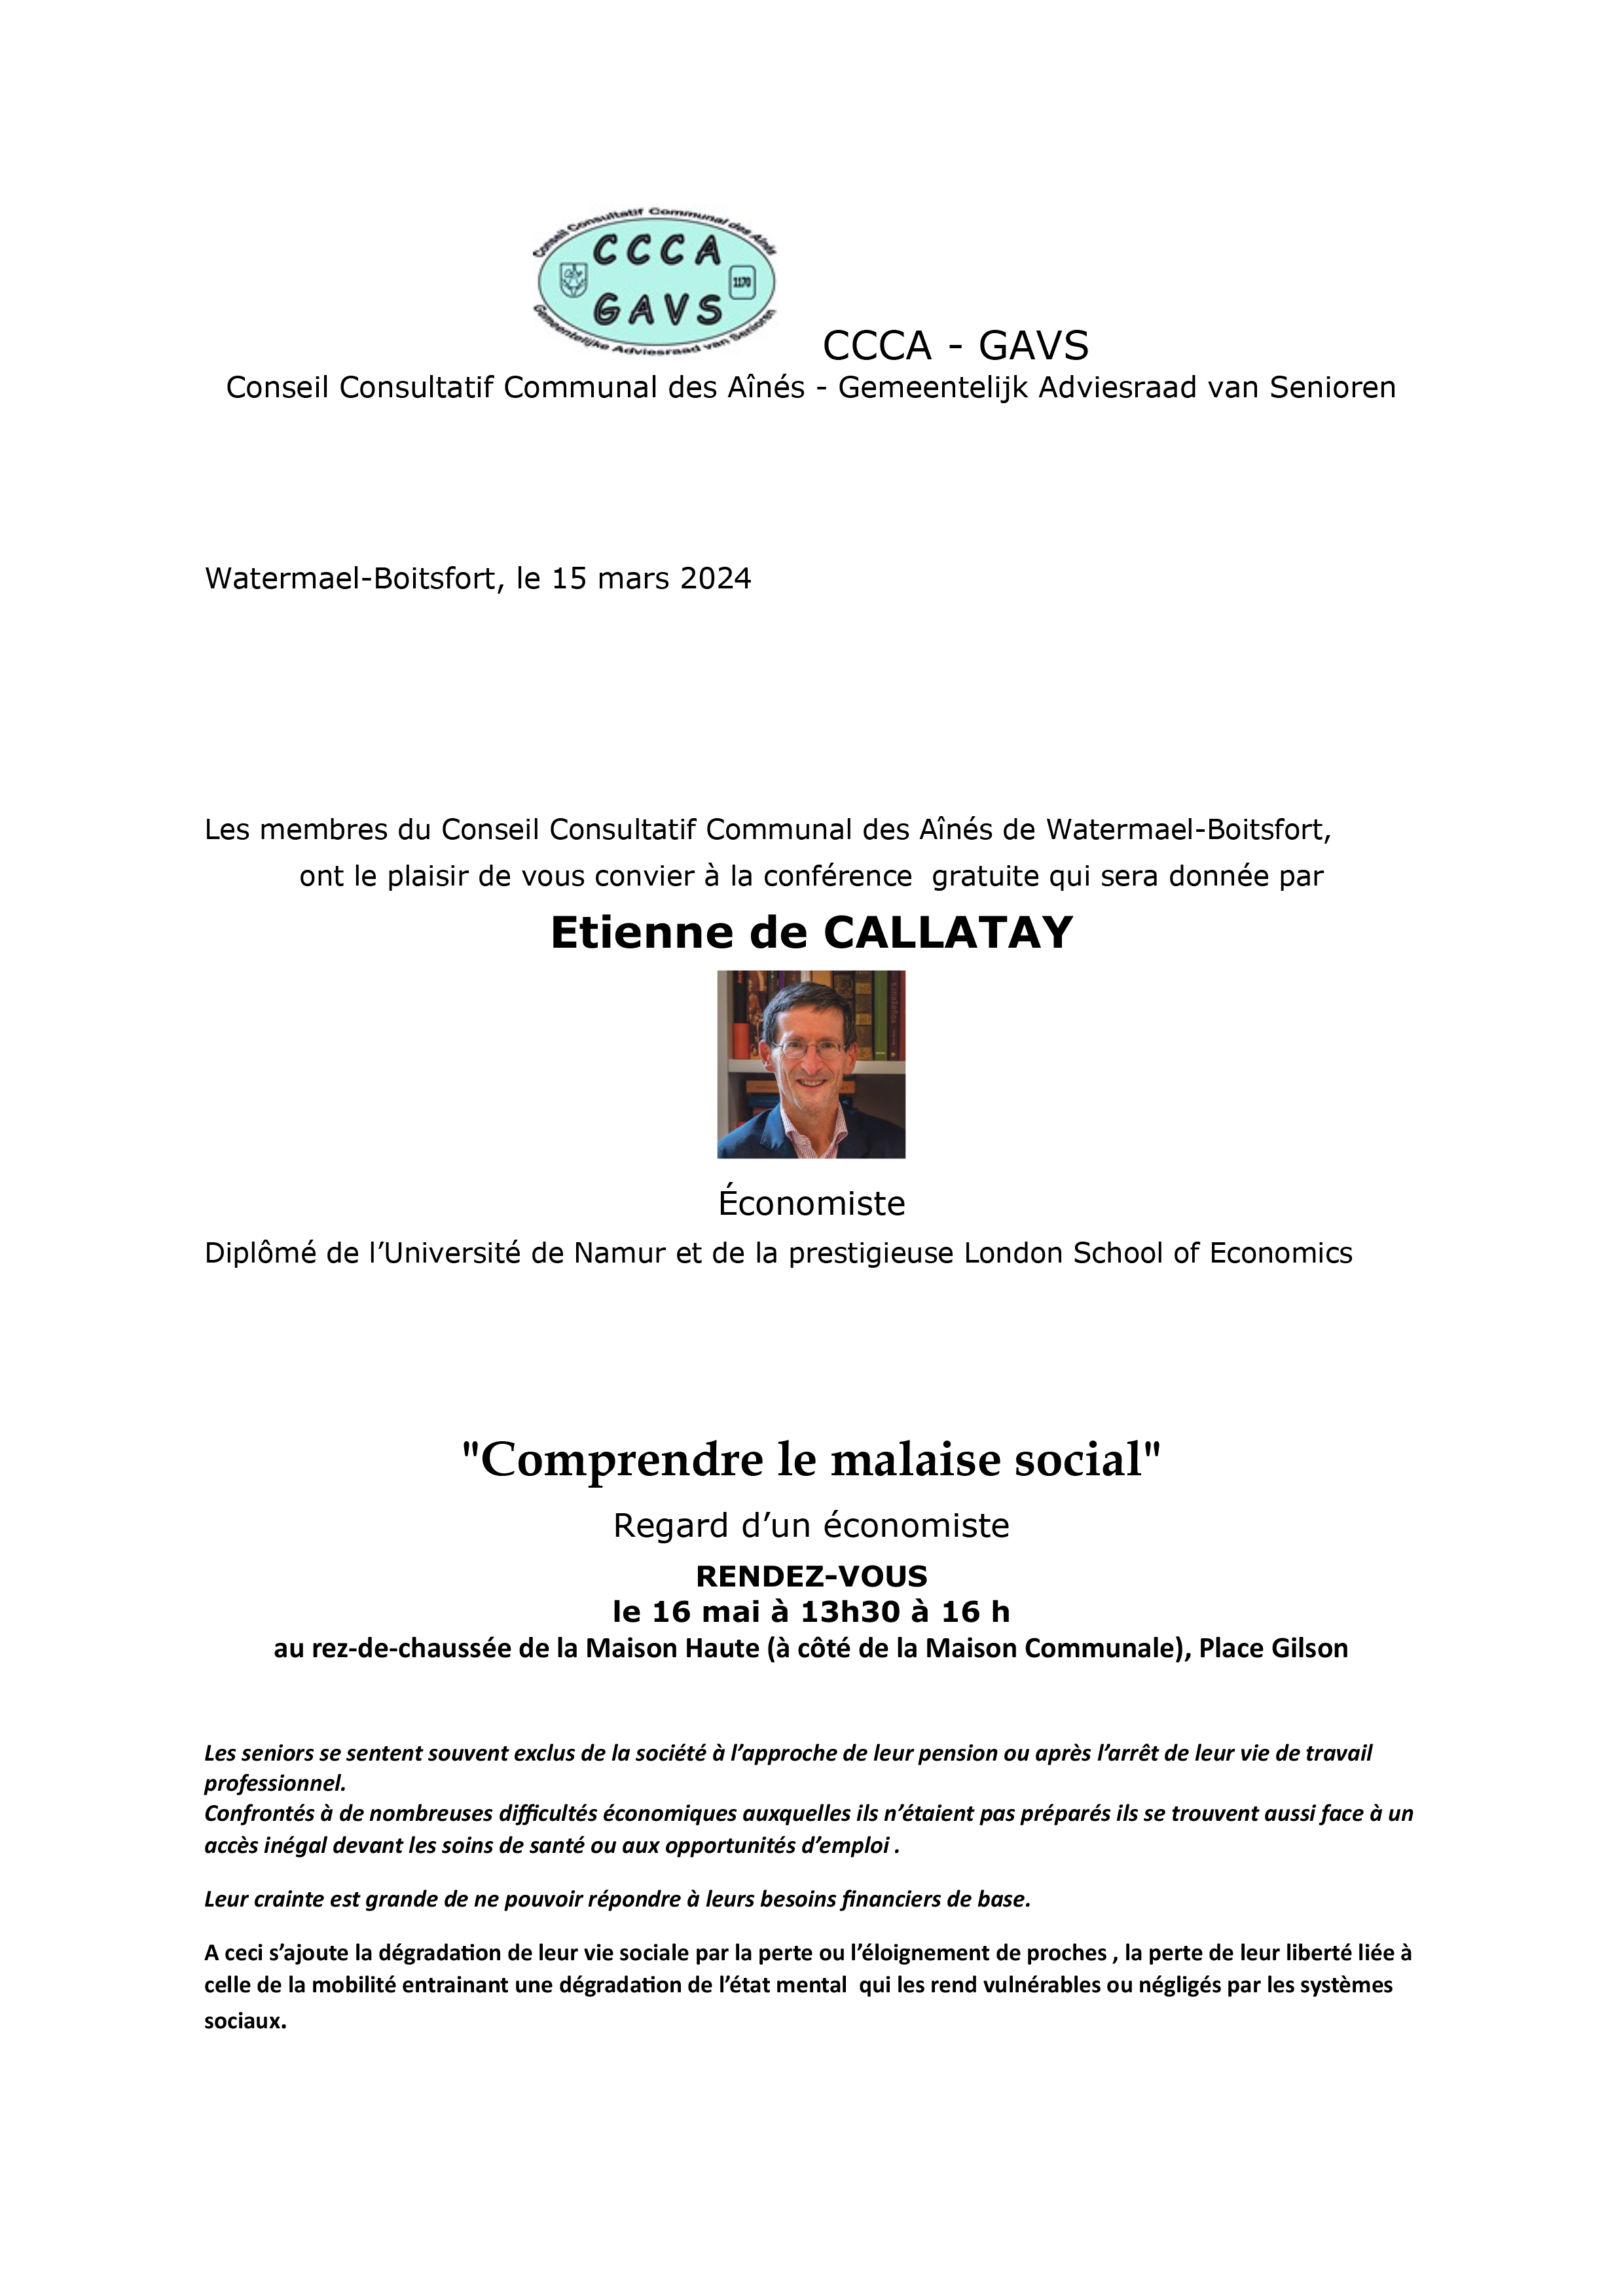 INVITATION de callatay 2CCCA.jpg